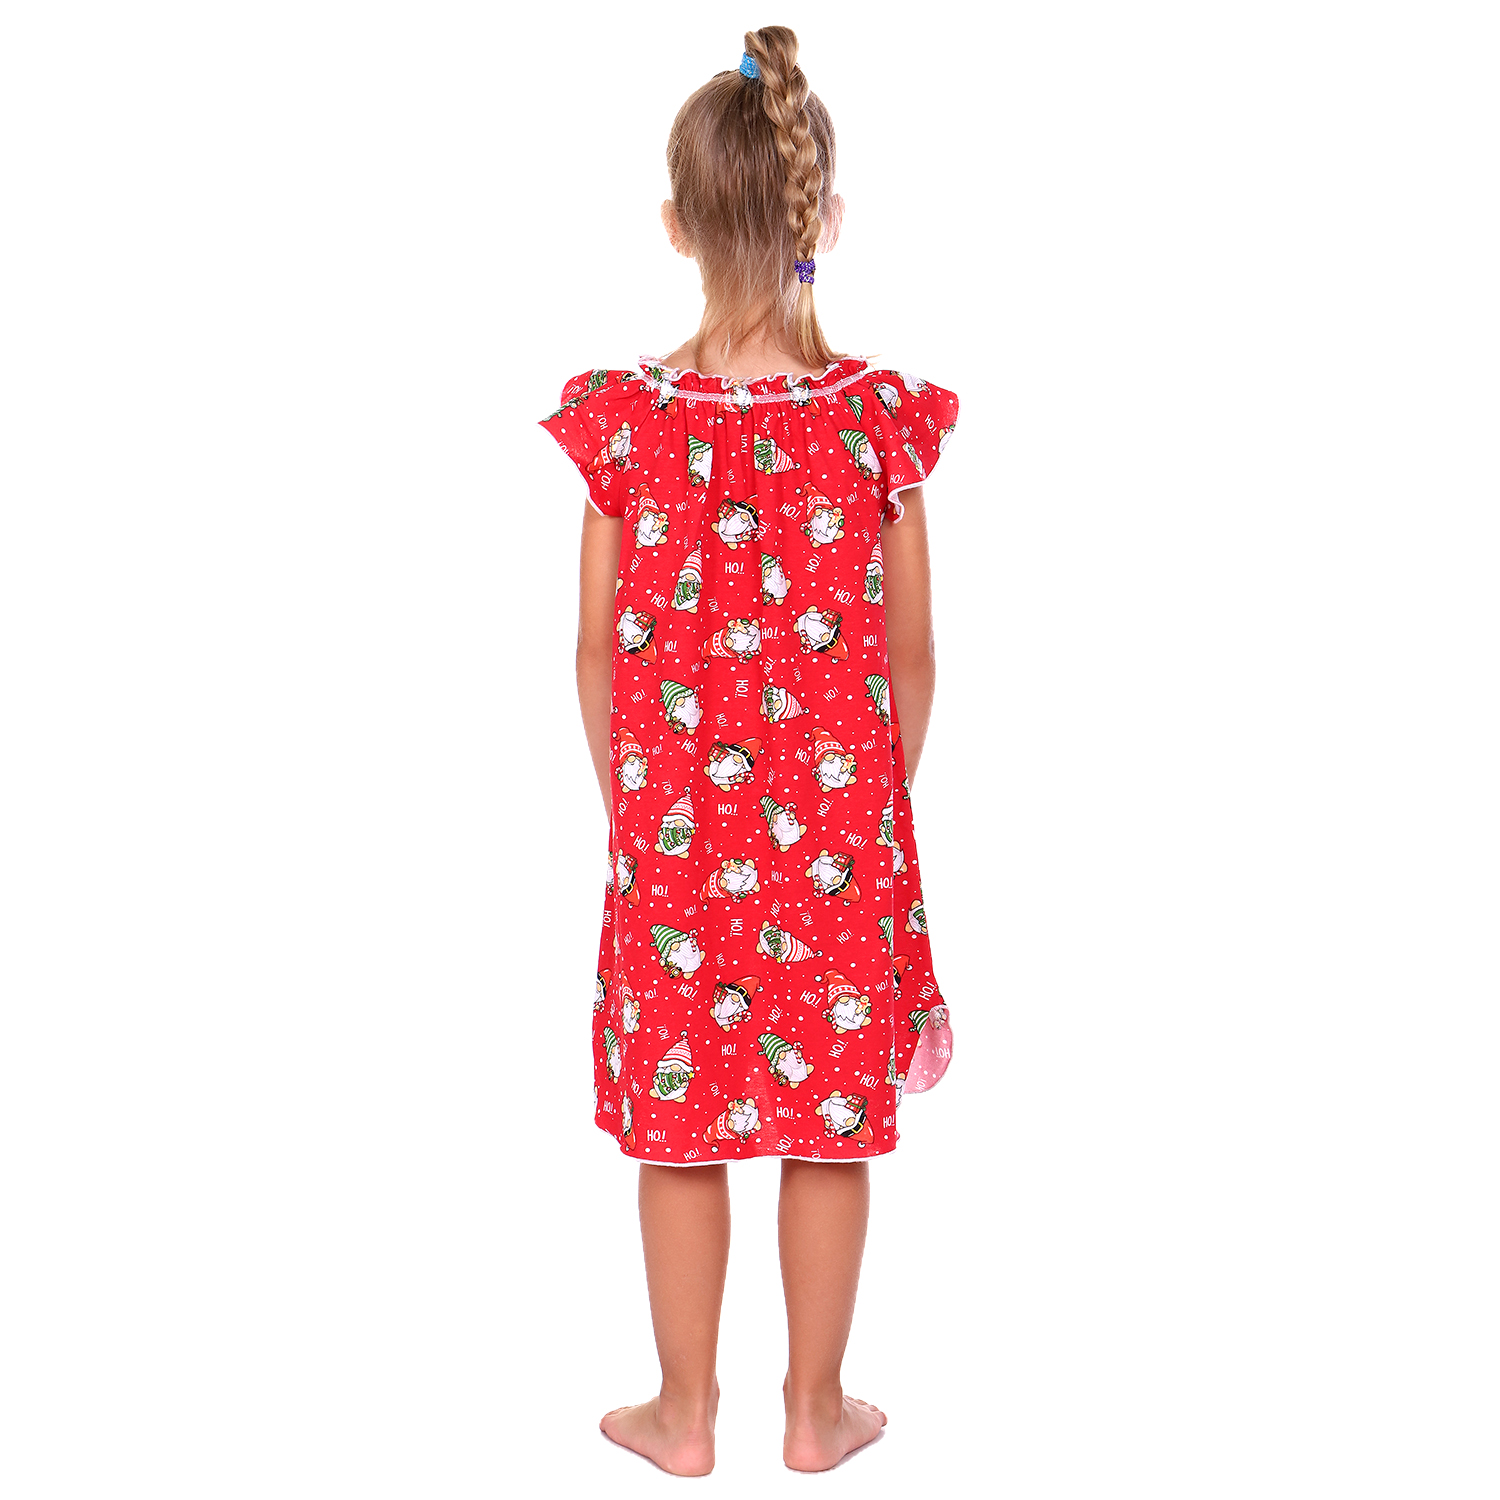 Сорочка ночная Детская Одежда 0003К/красный4 - фото 5